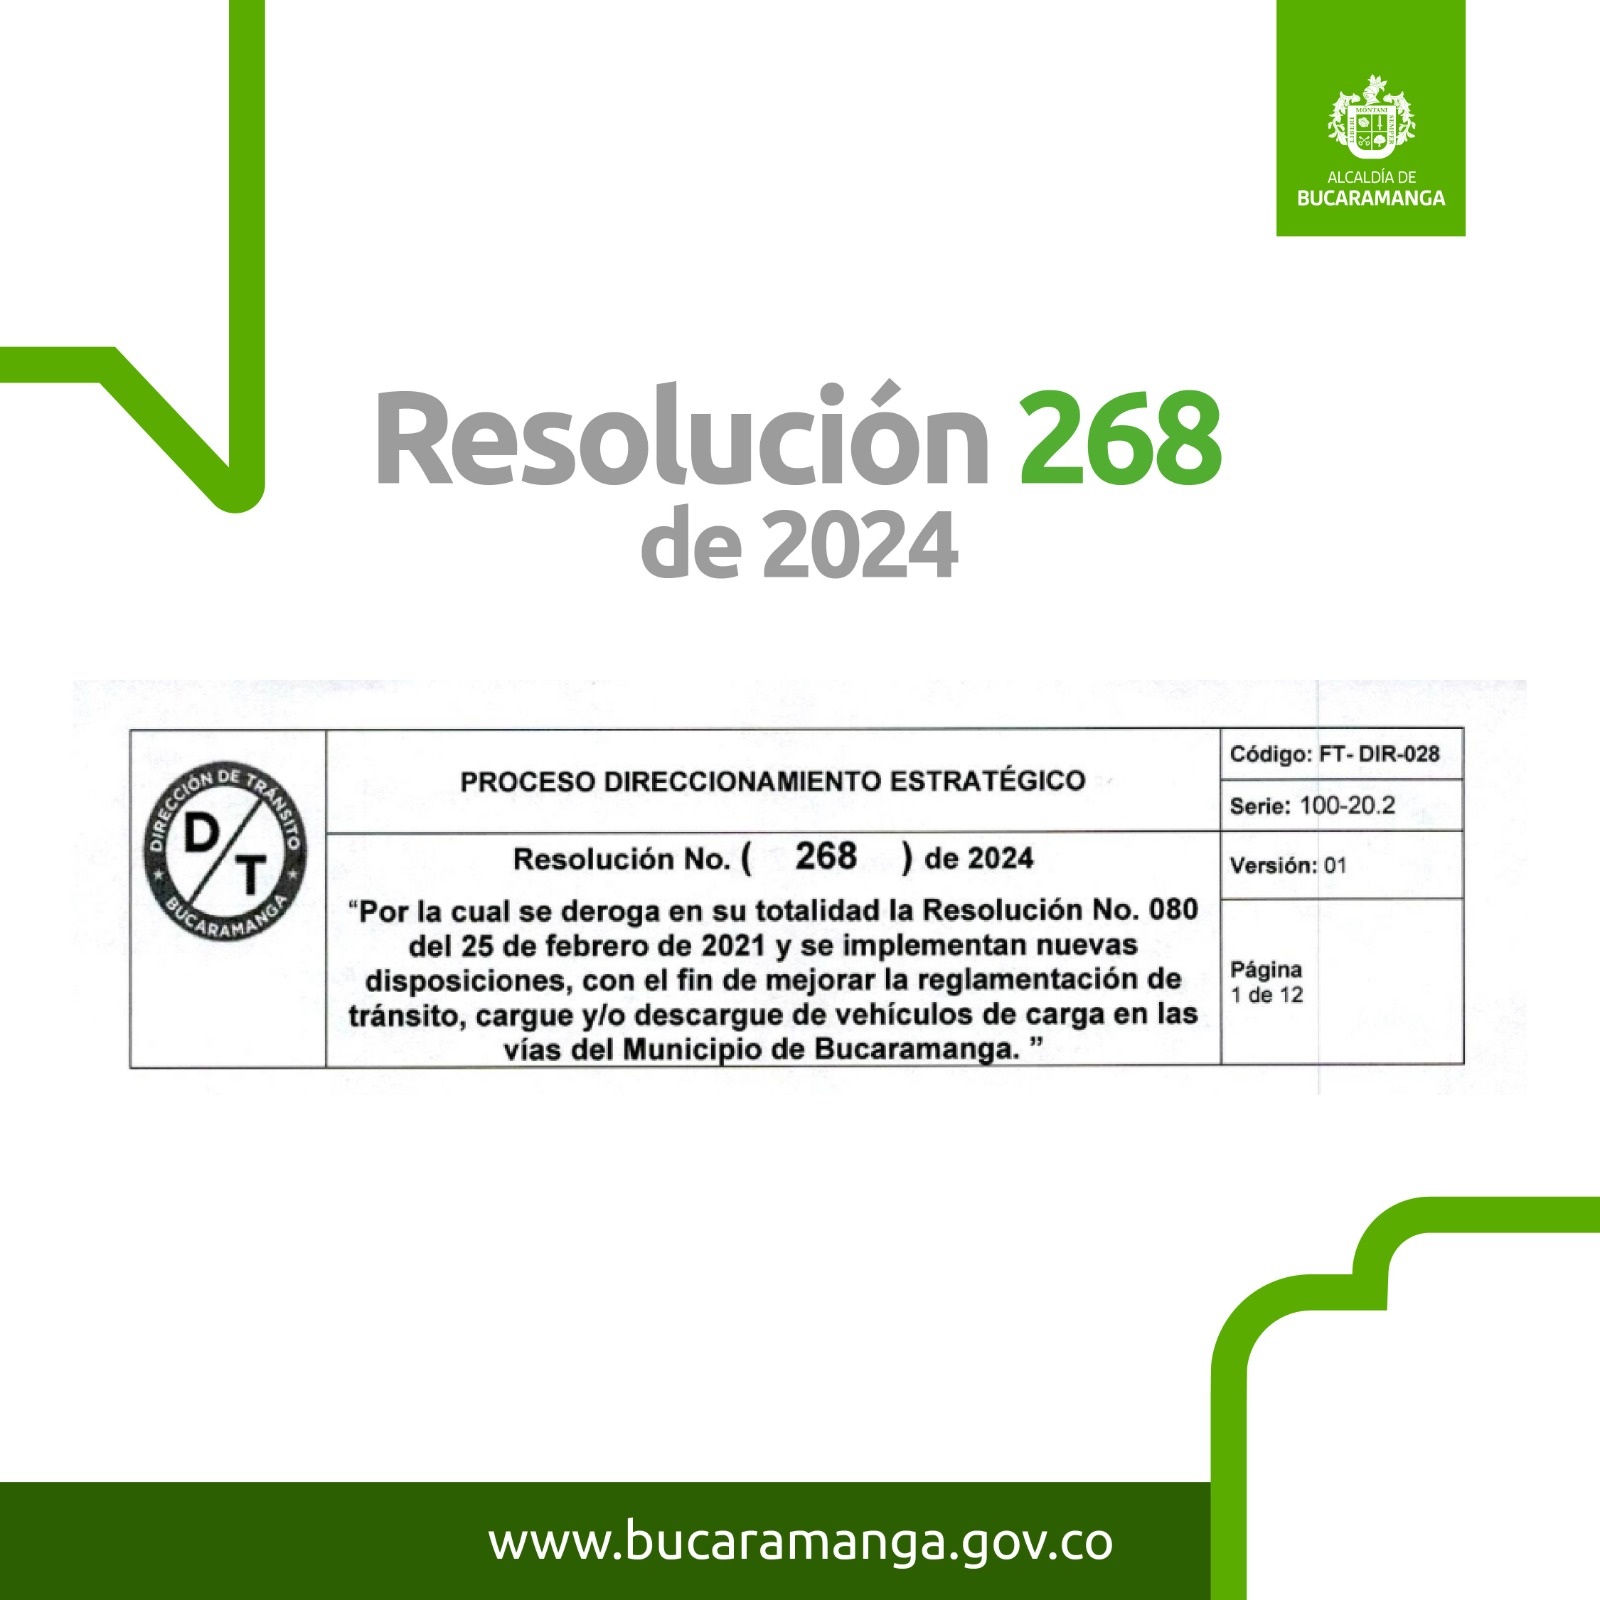 Resolución 268 2024